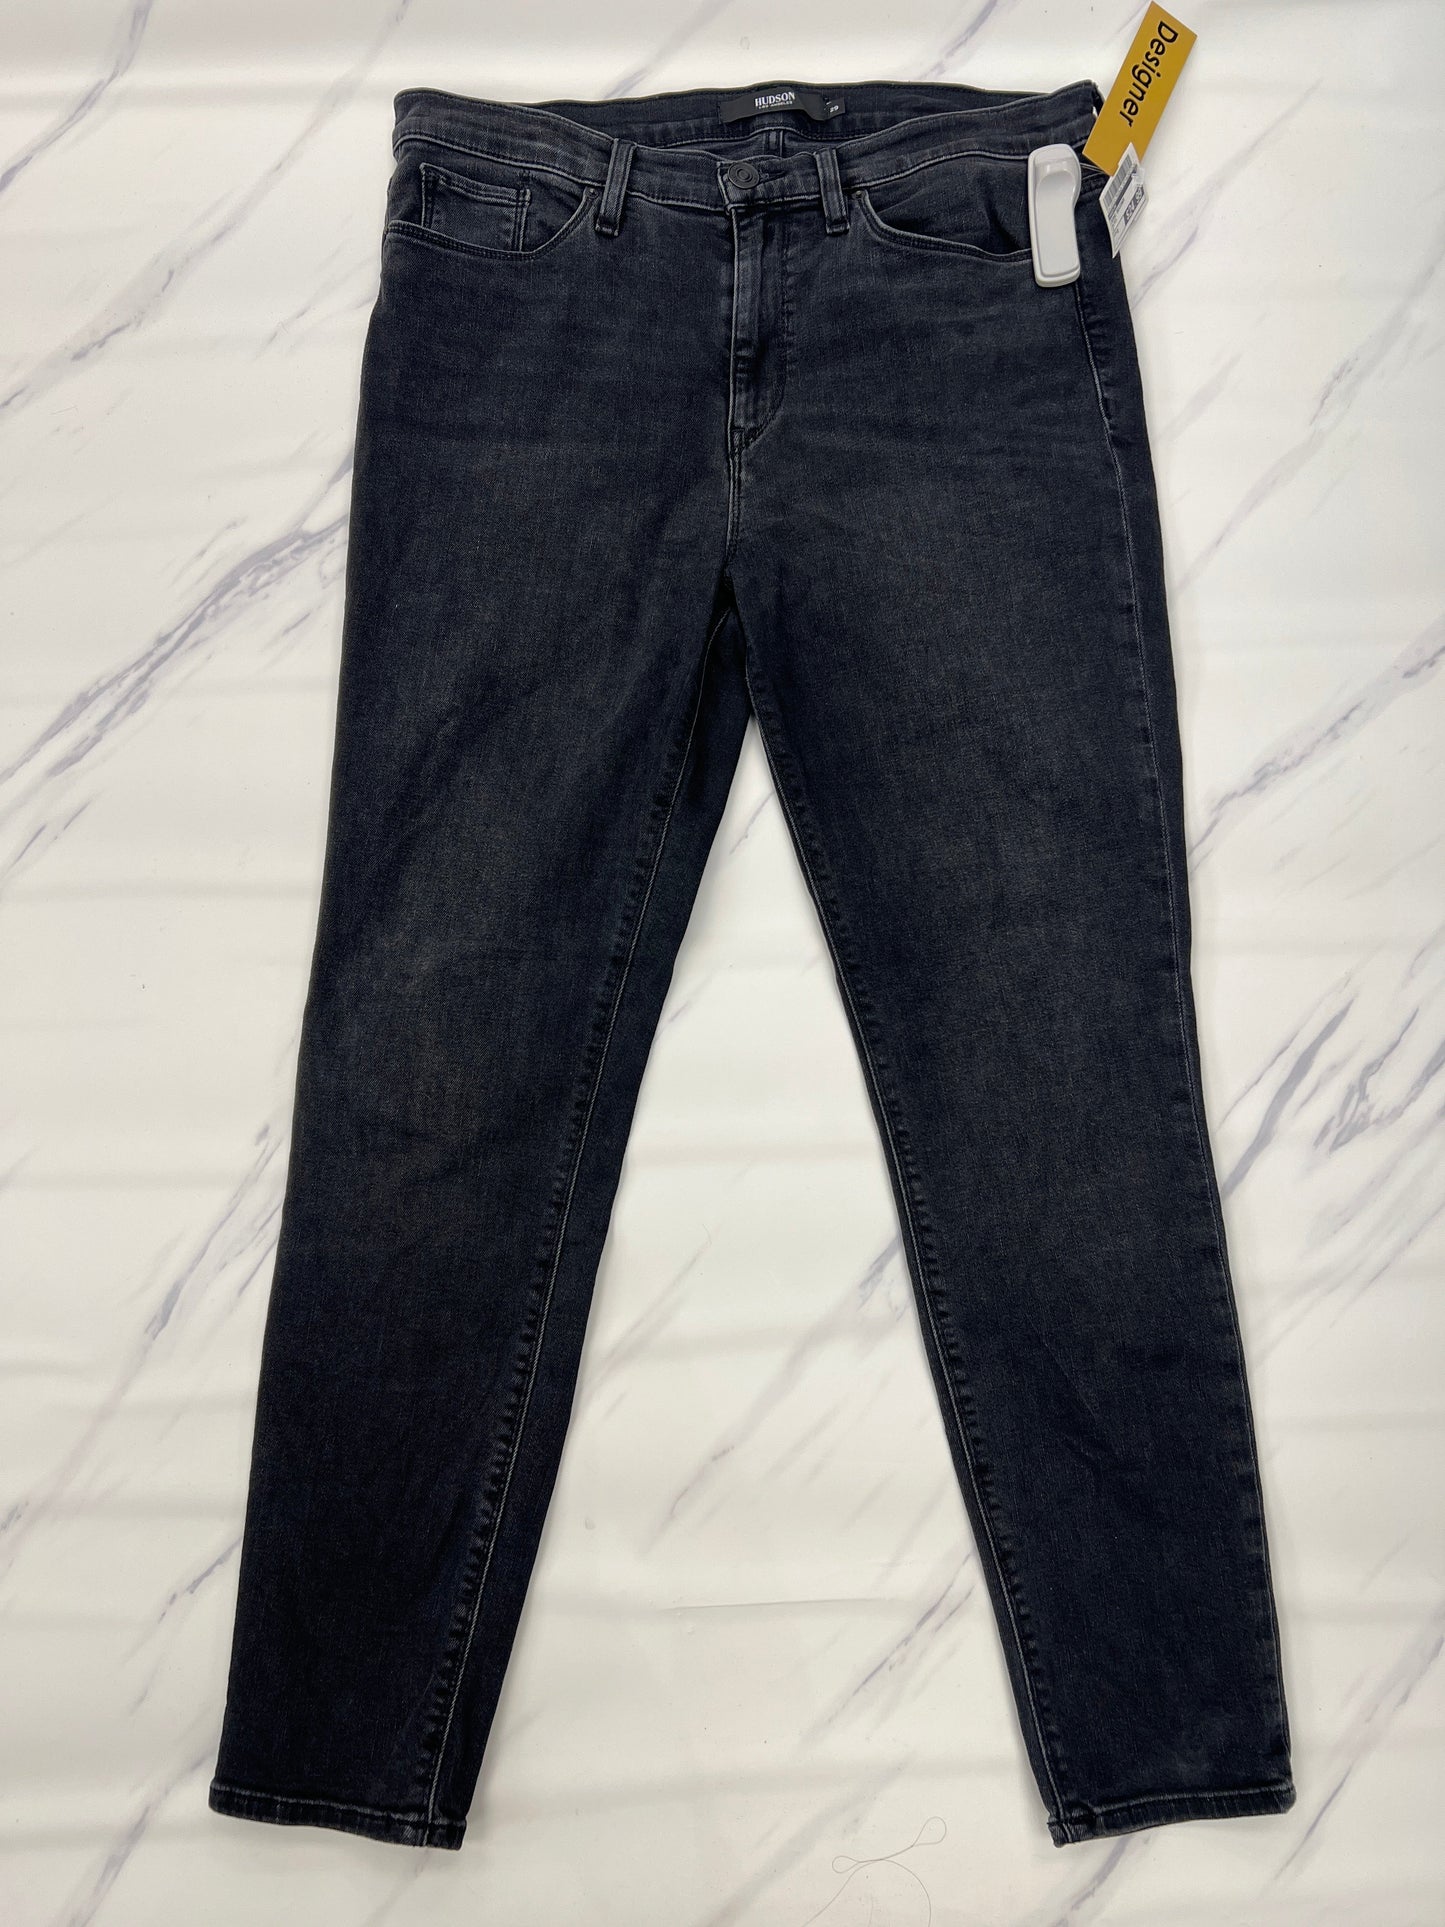 Black Jeans Designer Hudson, Size 8